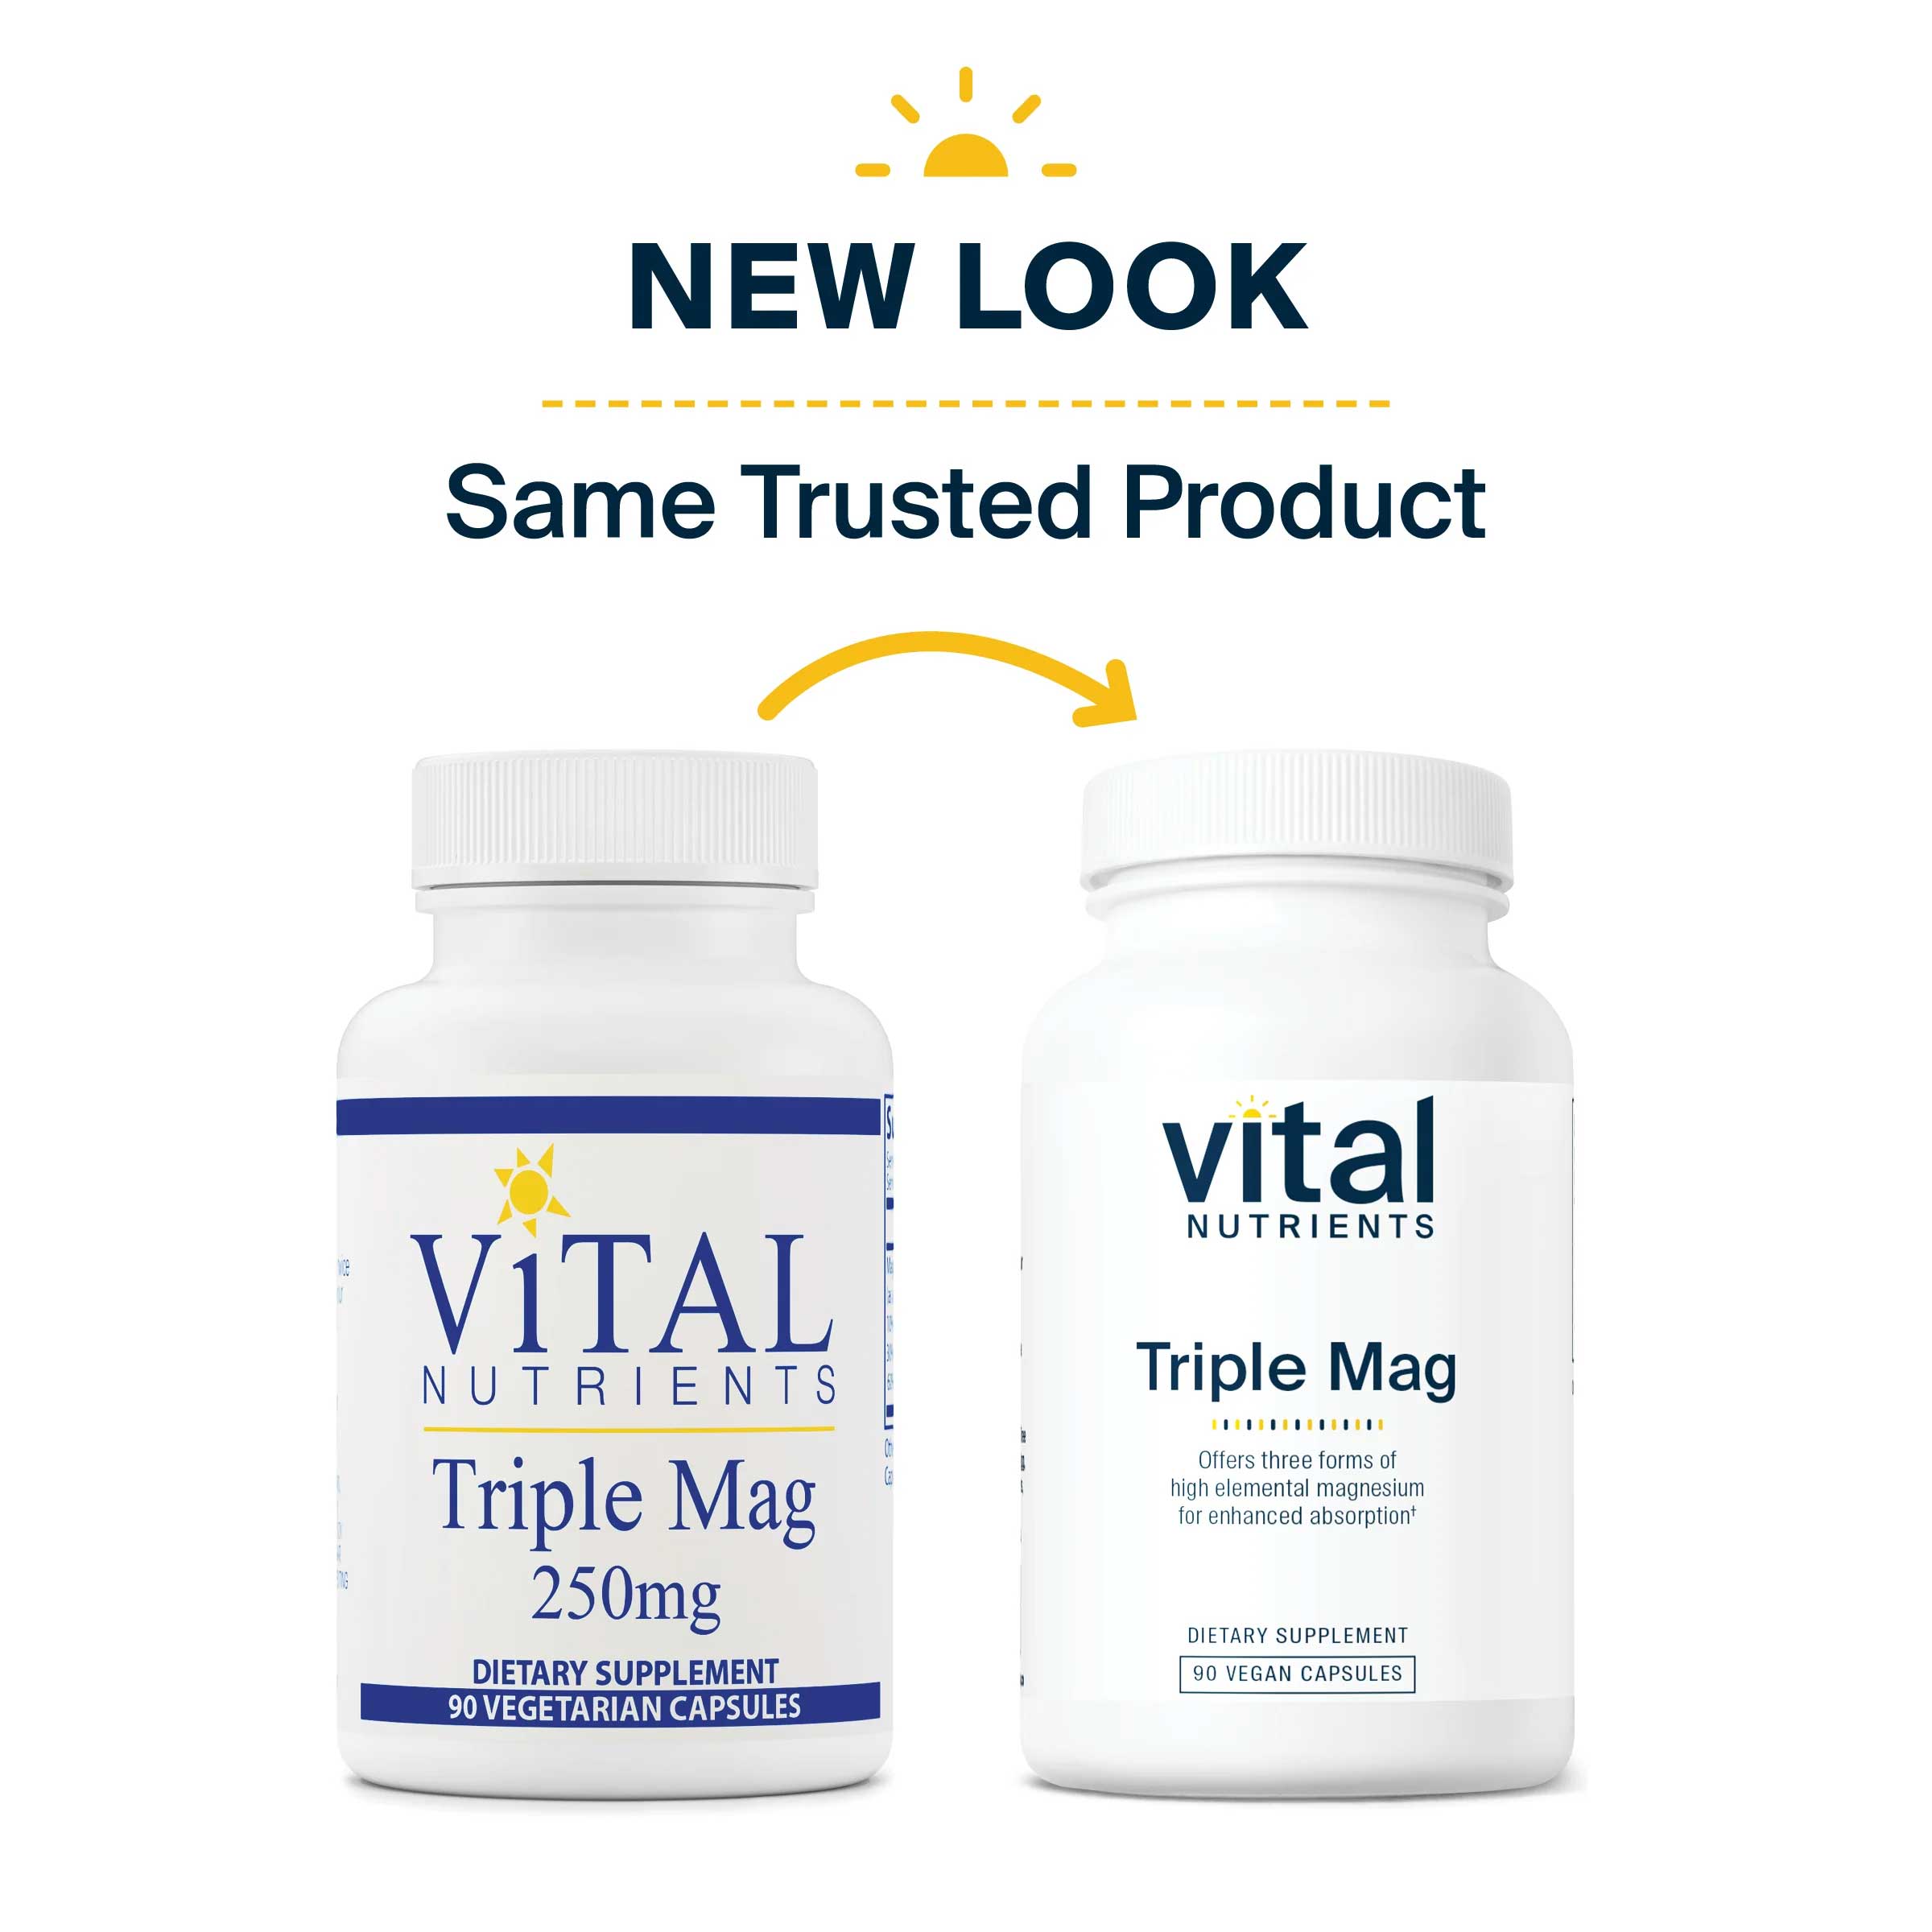 Vital Nutrients Triple Mag New Look